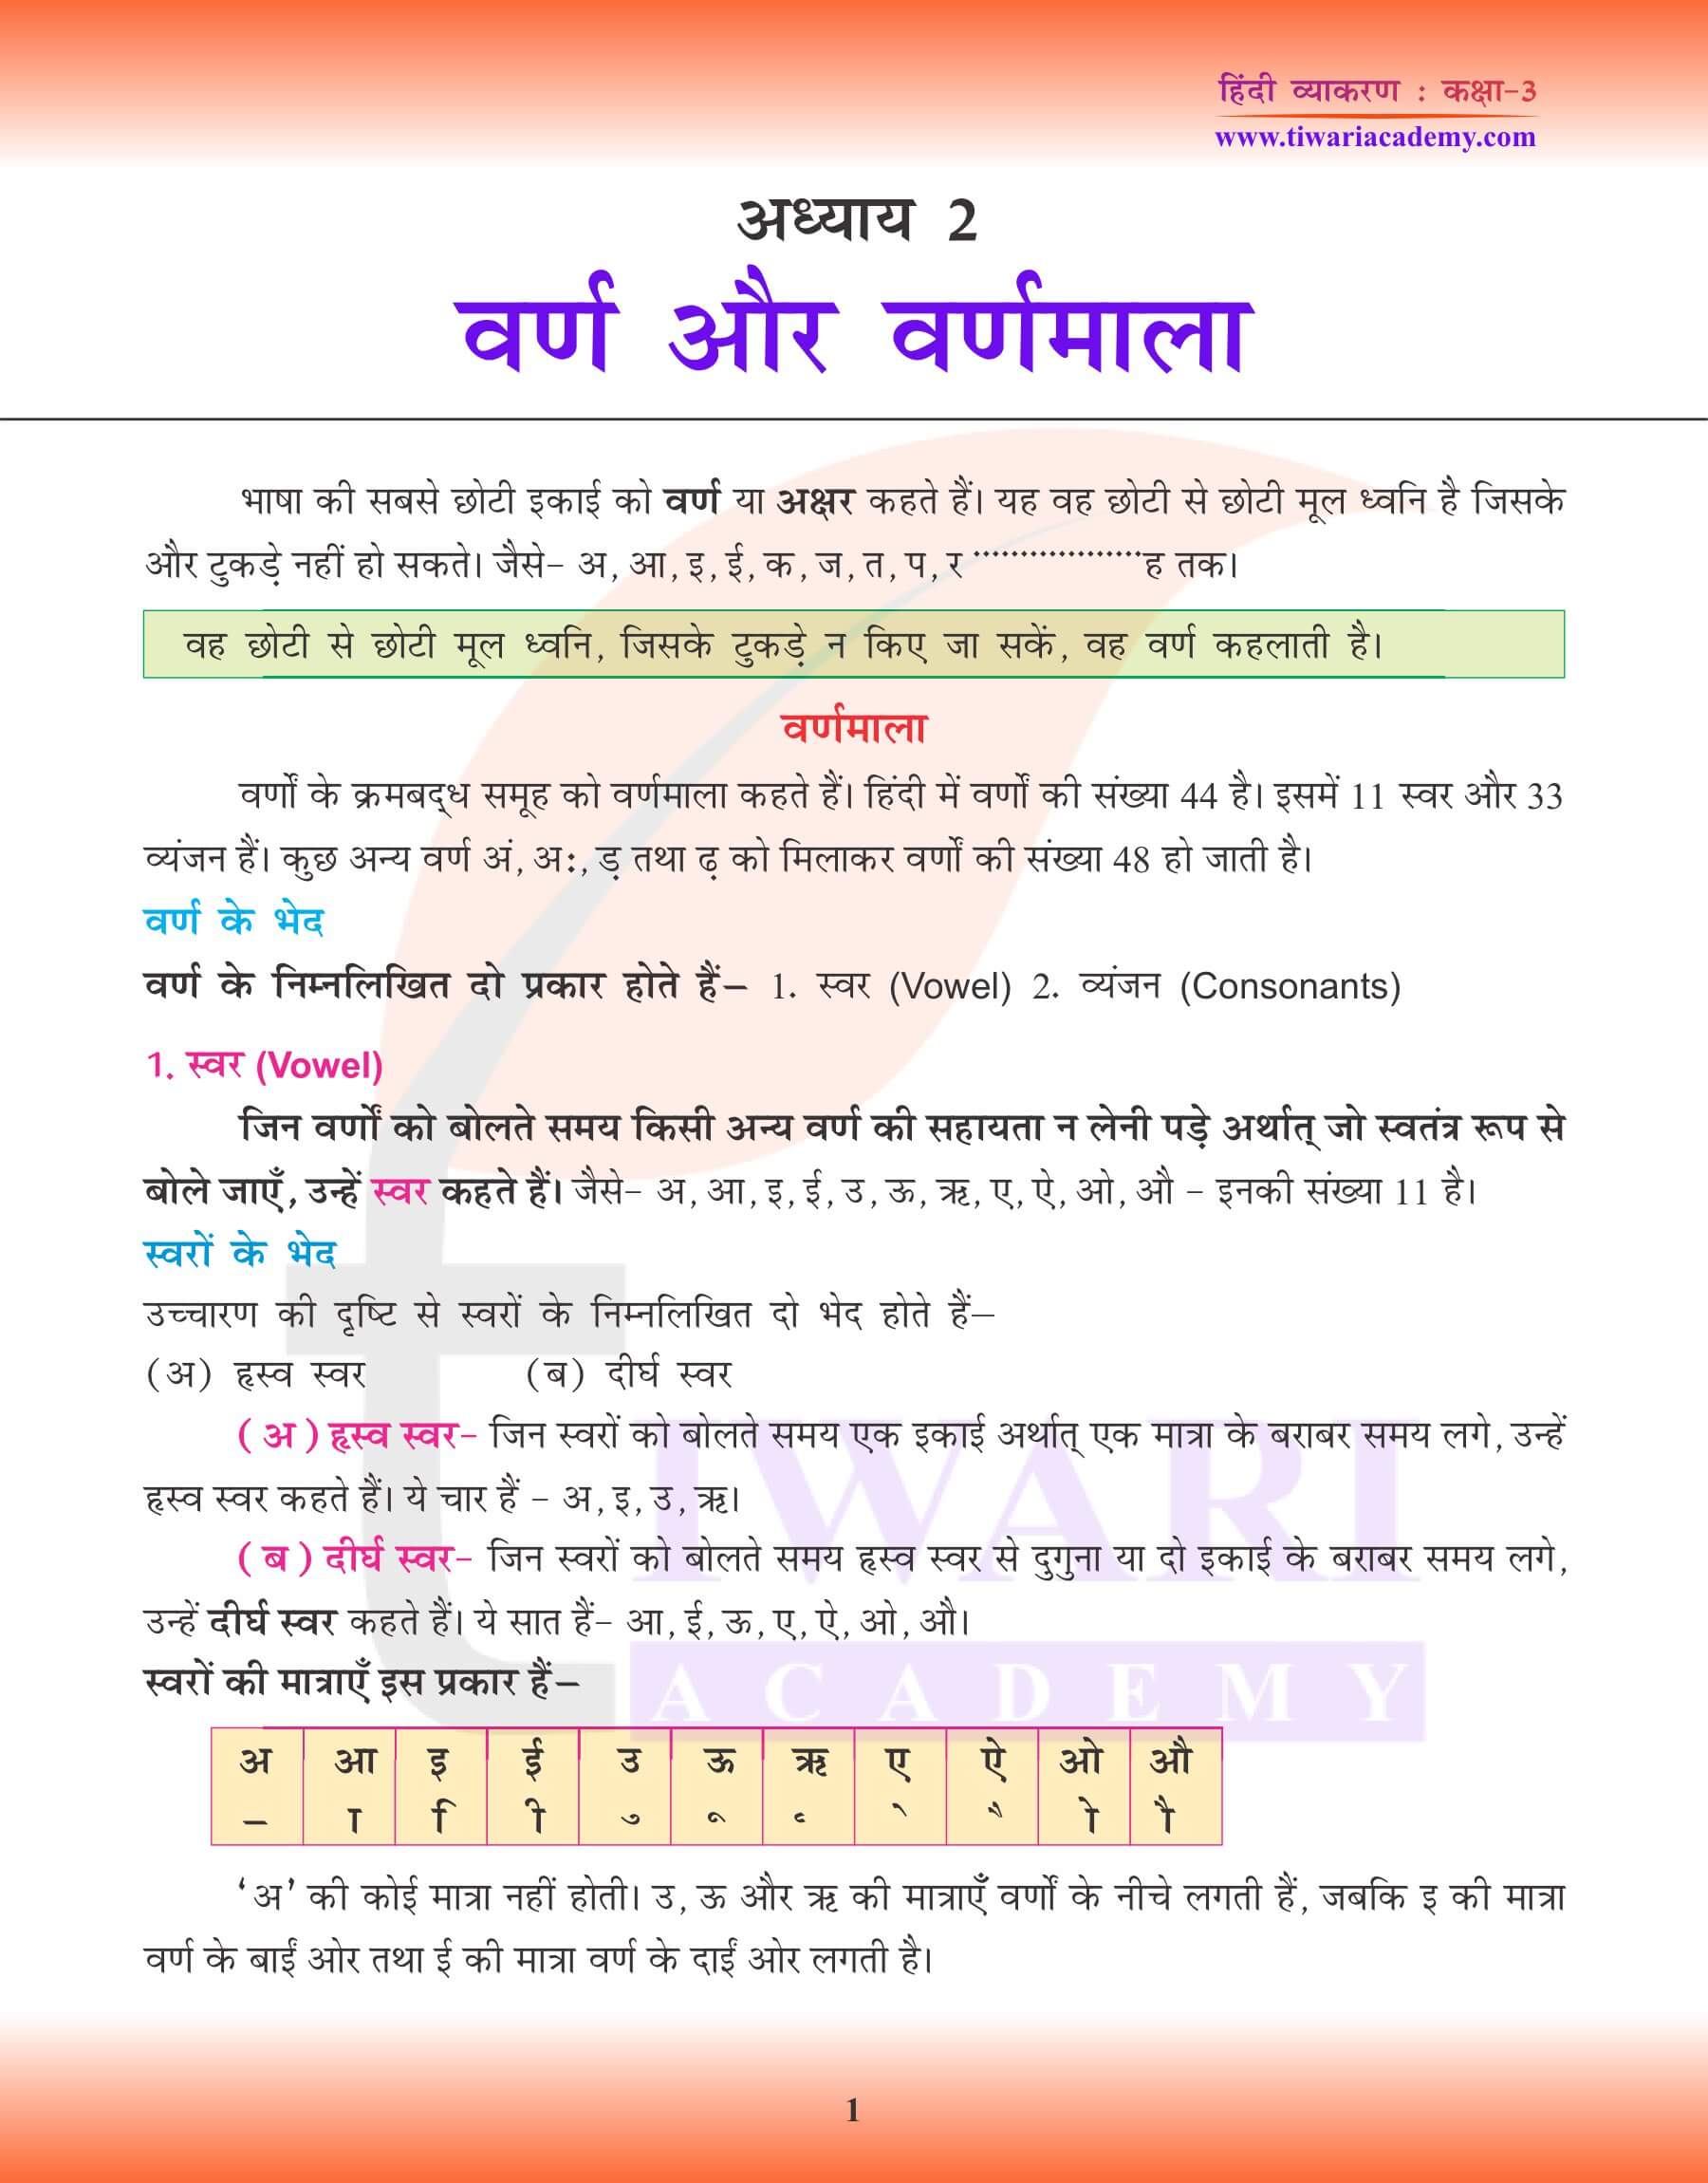 कक्षा 3 हिंदी व्याकरण पाठ 2 वर्ण और वर्णमाला